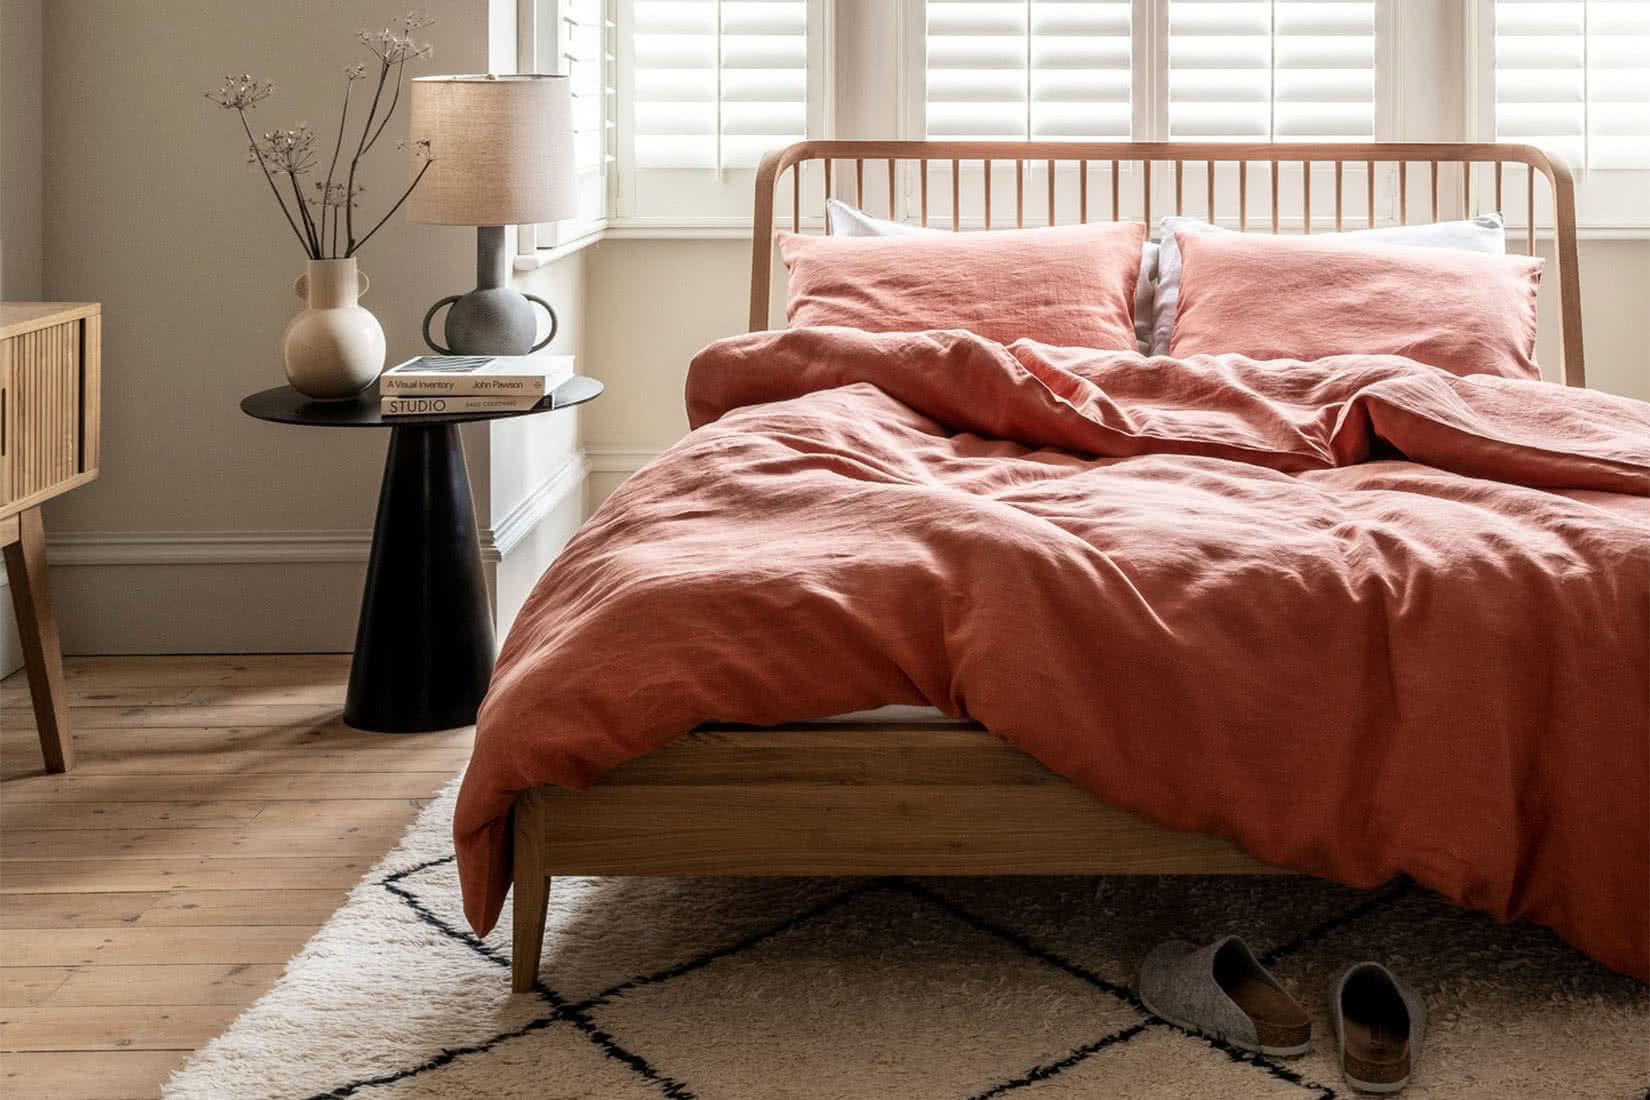 best bed sheets piglet in bed luxury linen luxe digital